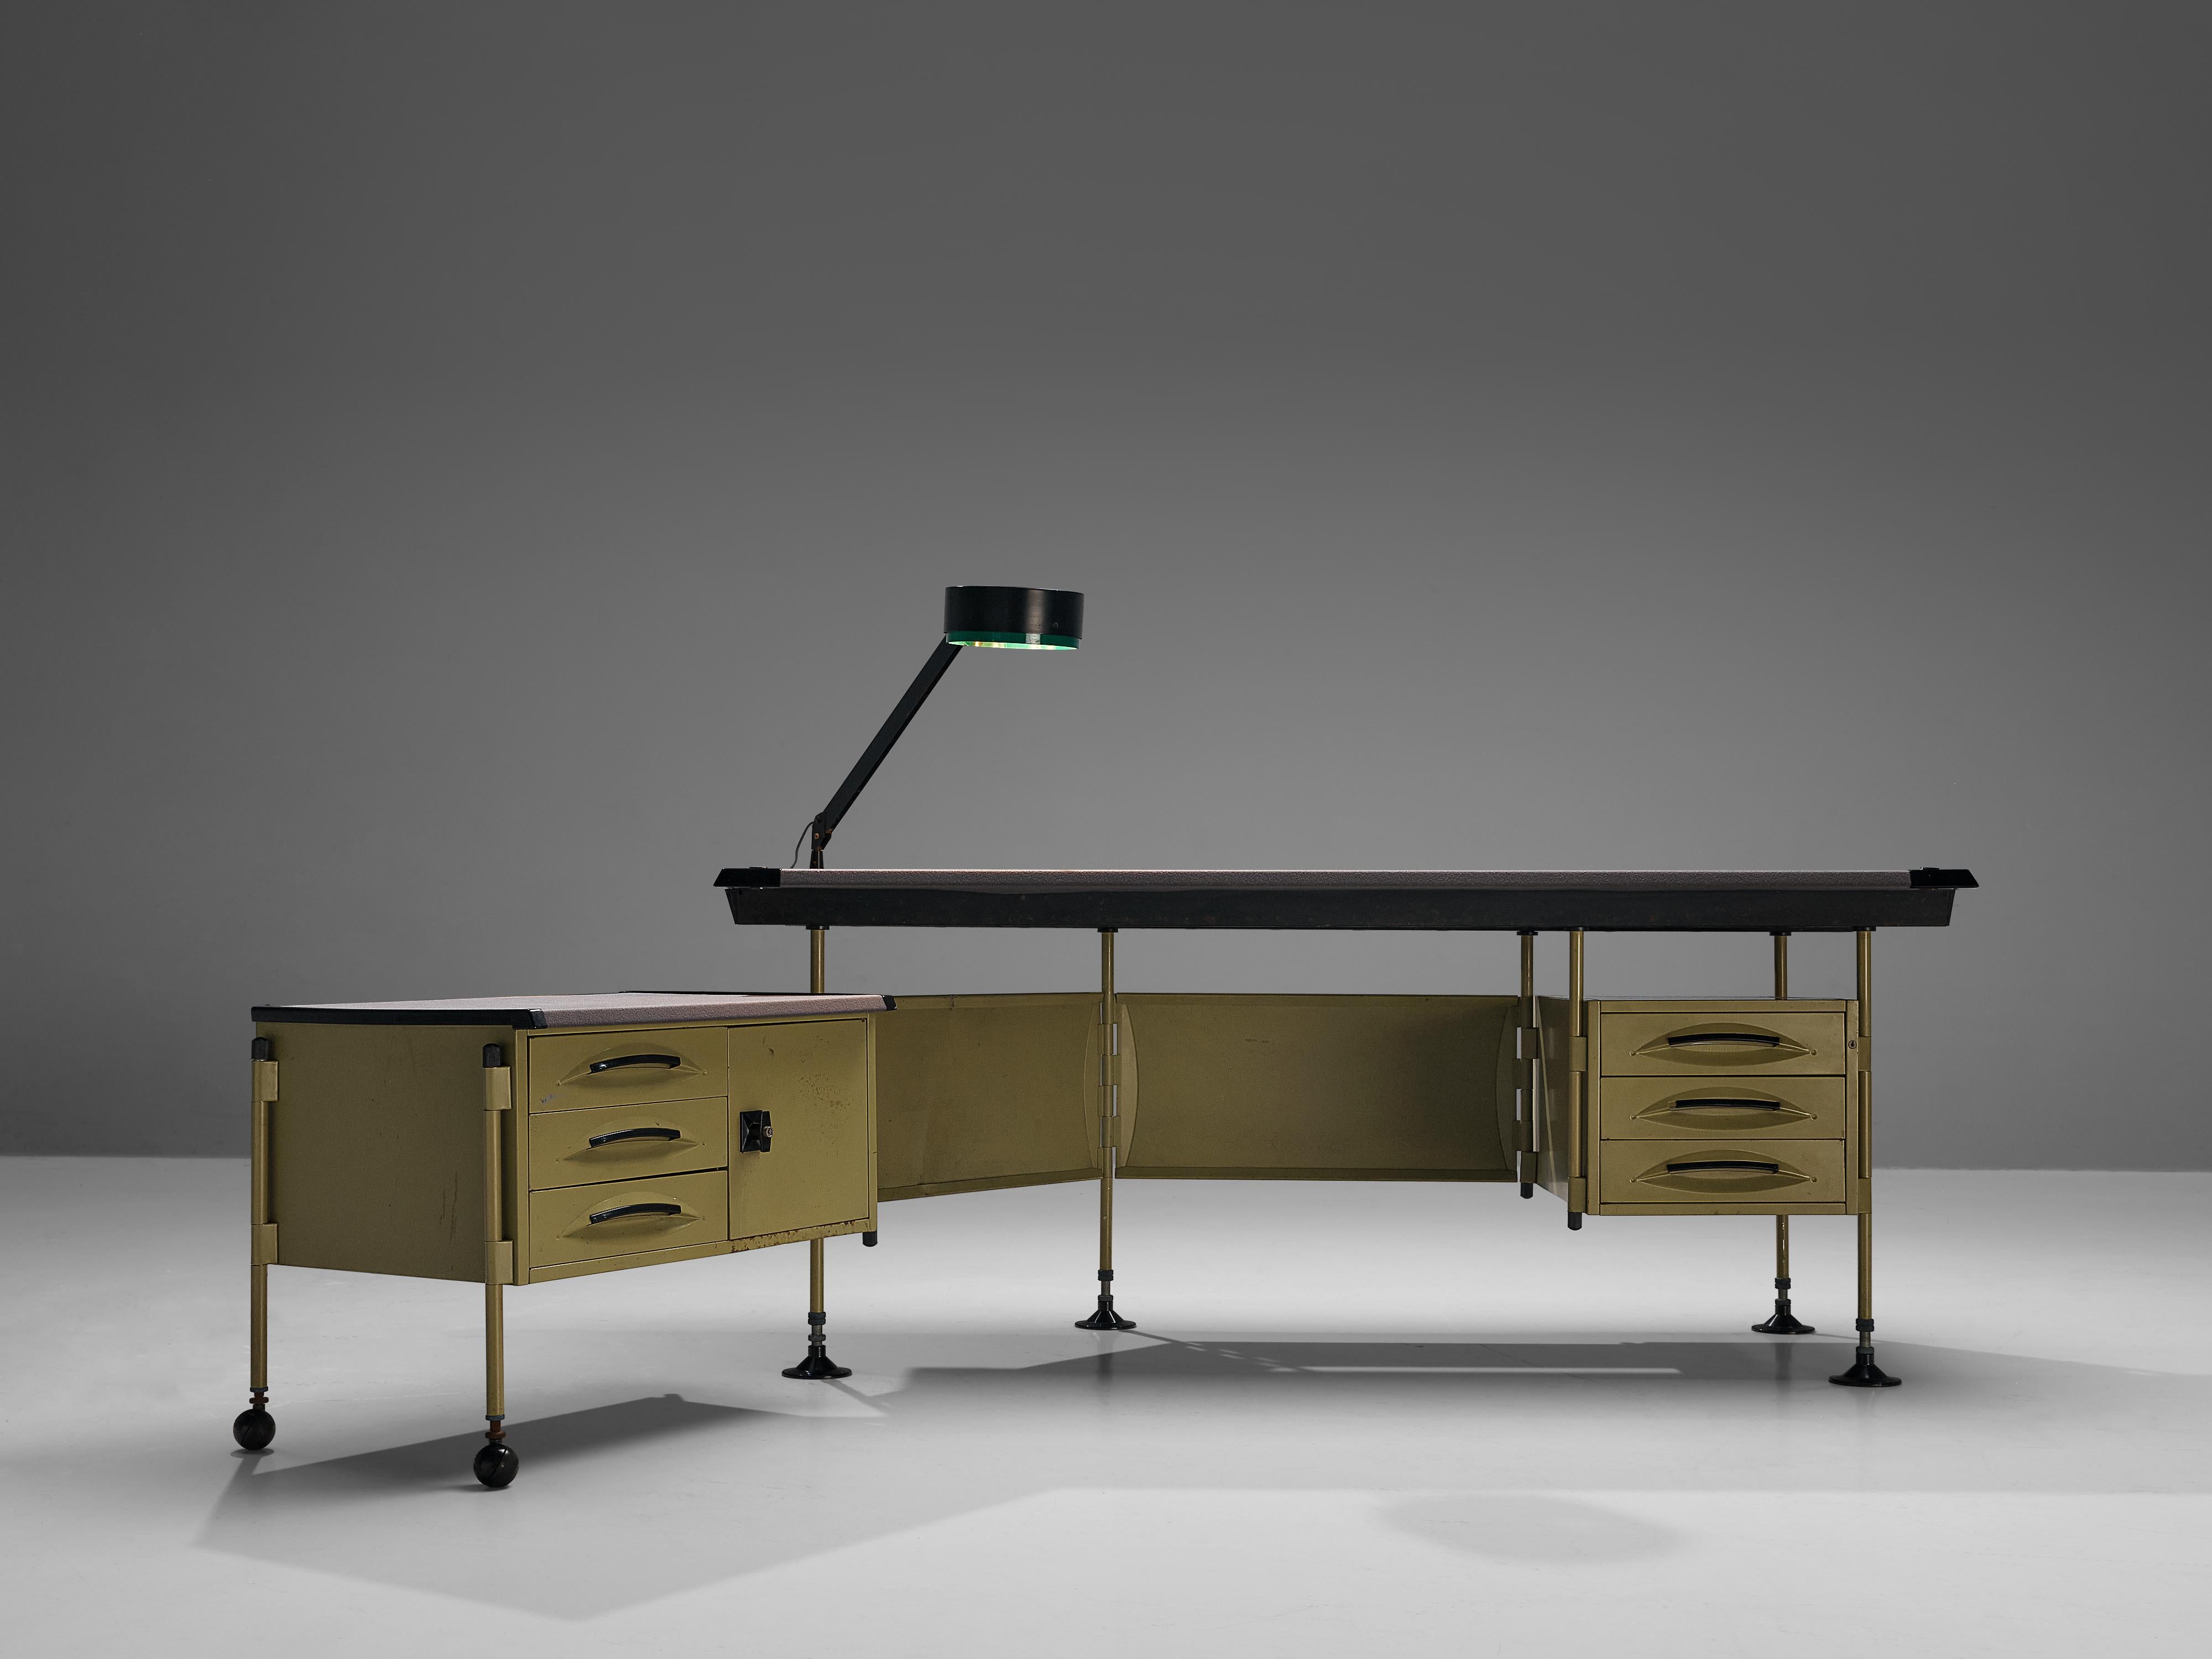 Italian Studio BBPR for Olivetti 'Spazio' Desk with Original Lamp